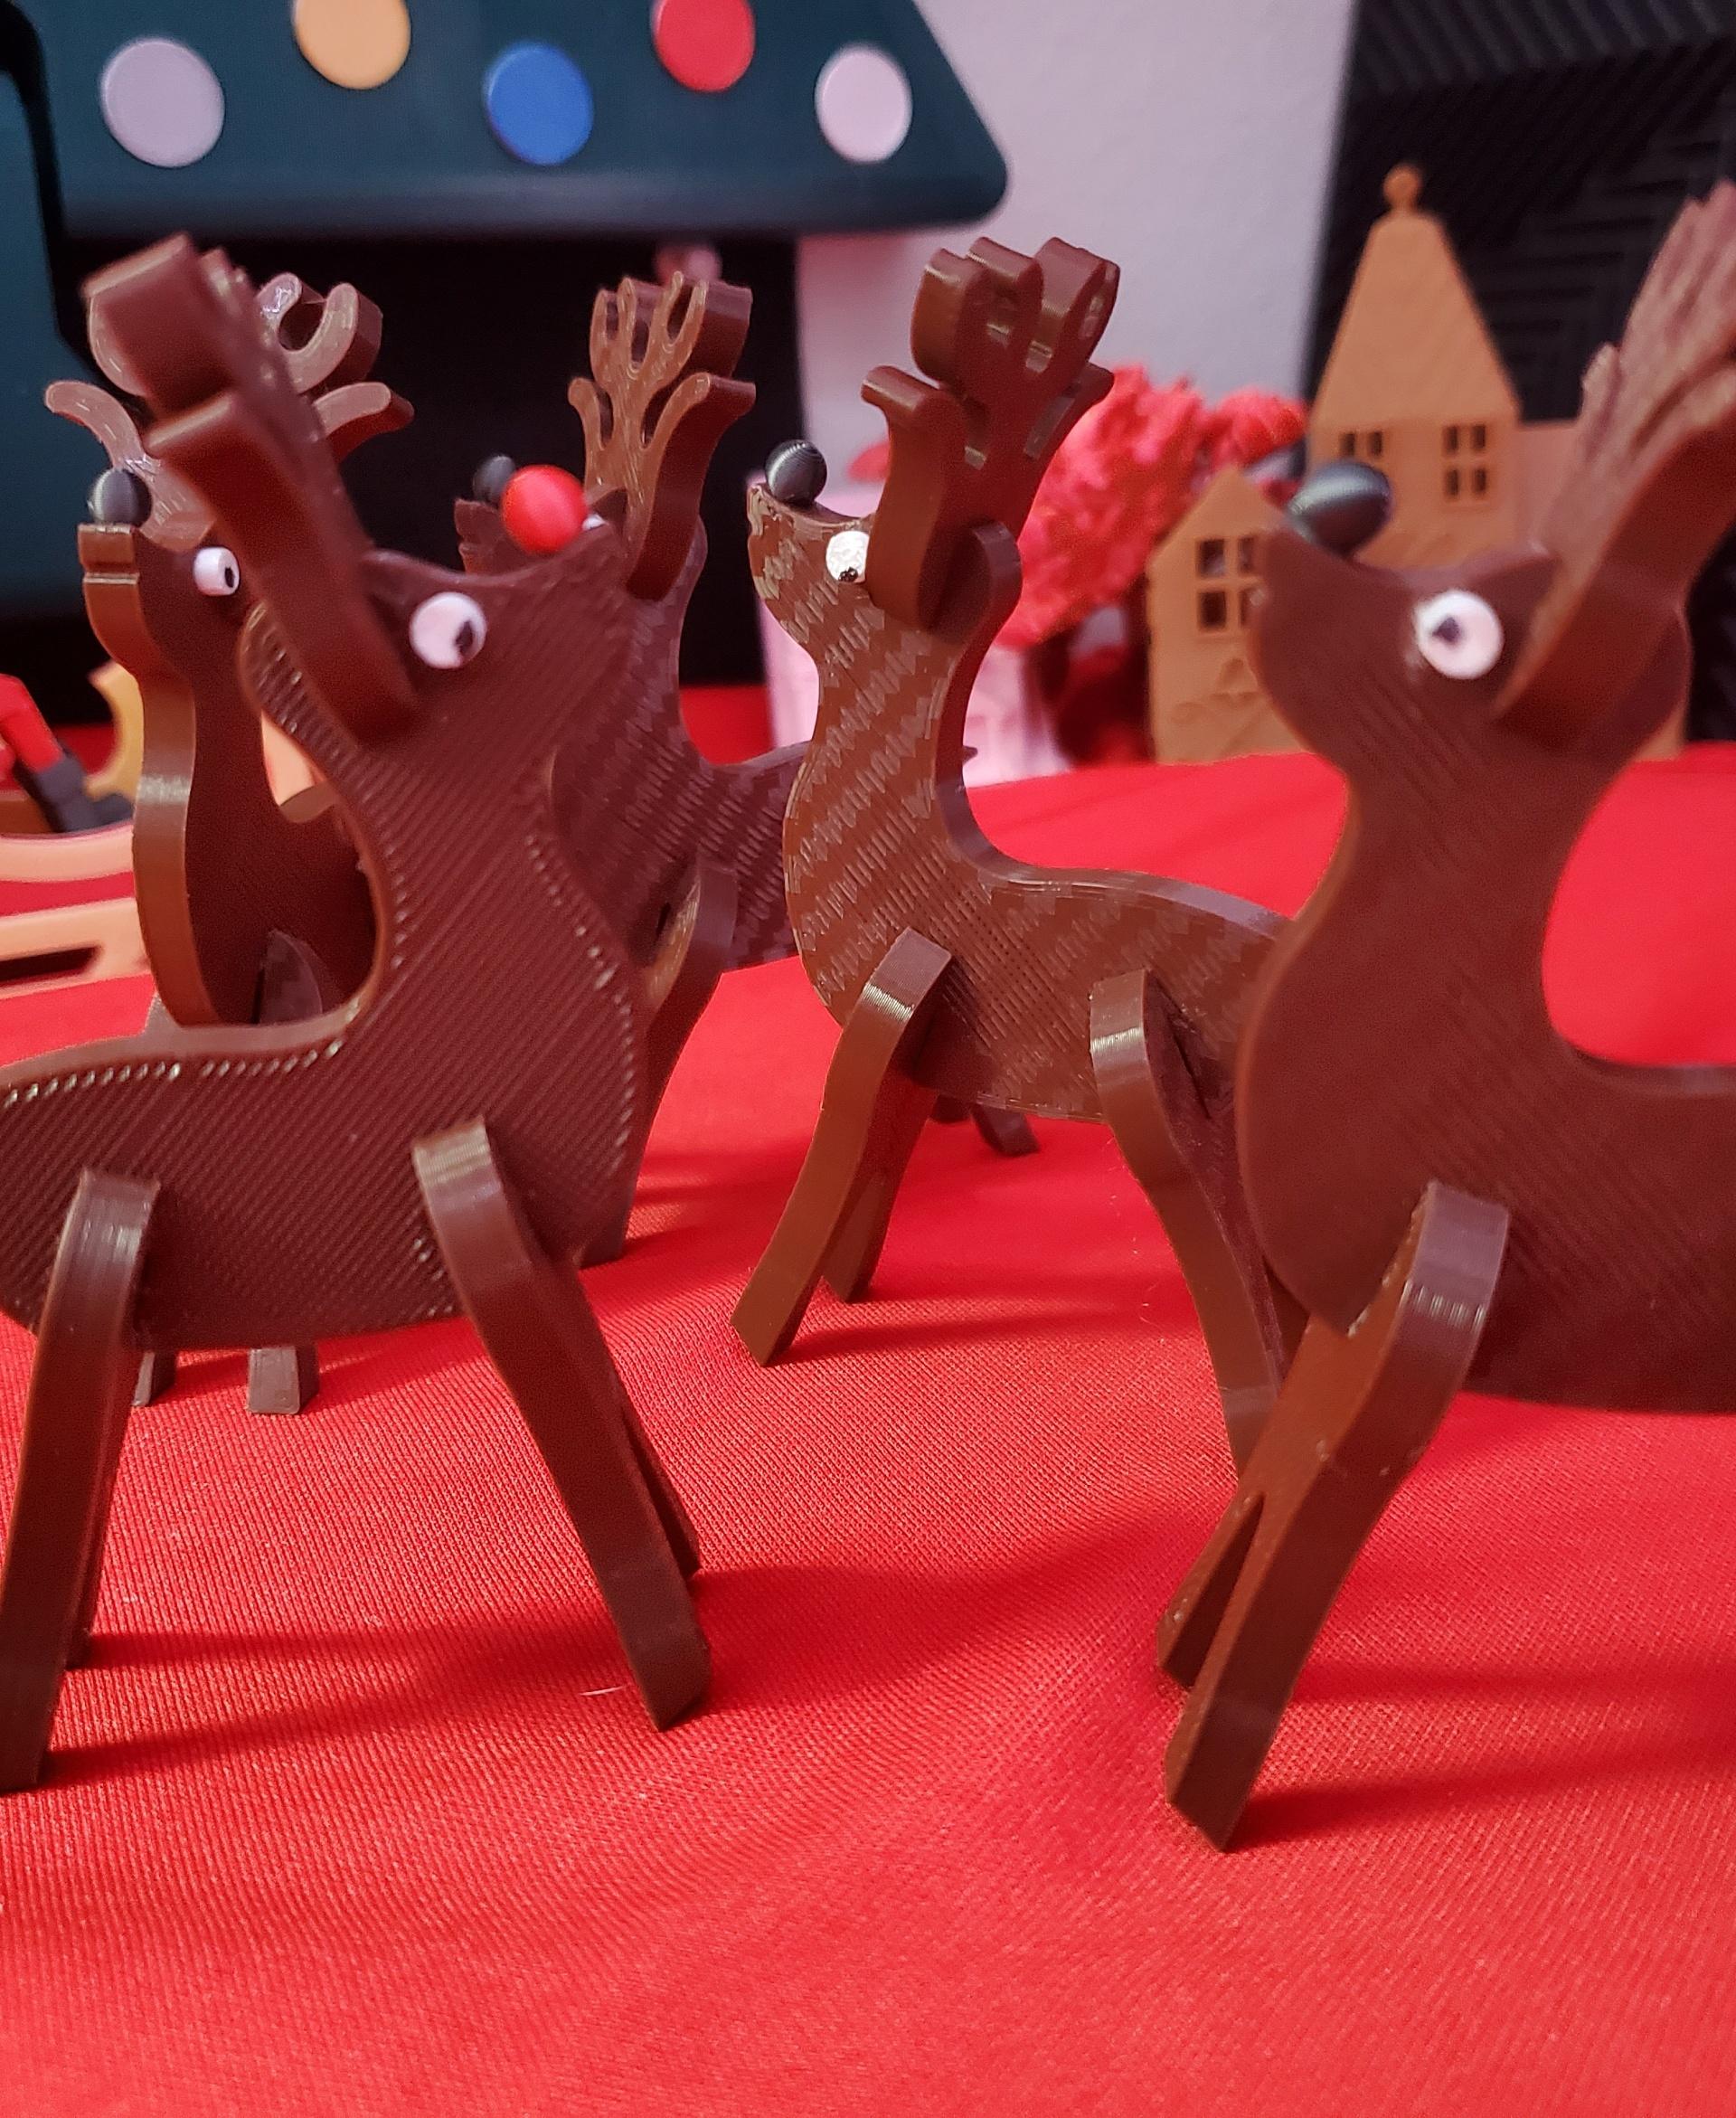 Reindeer Wood Cut Kit 3d model